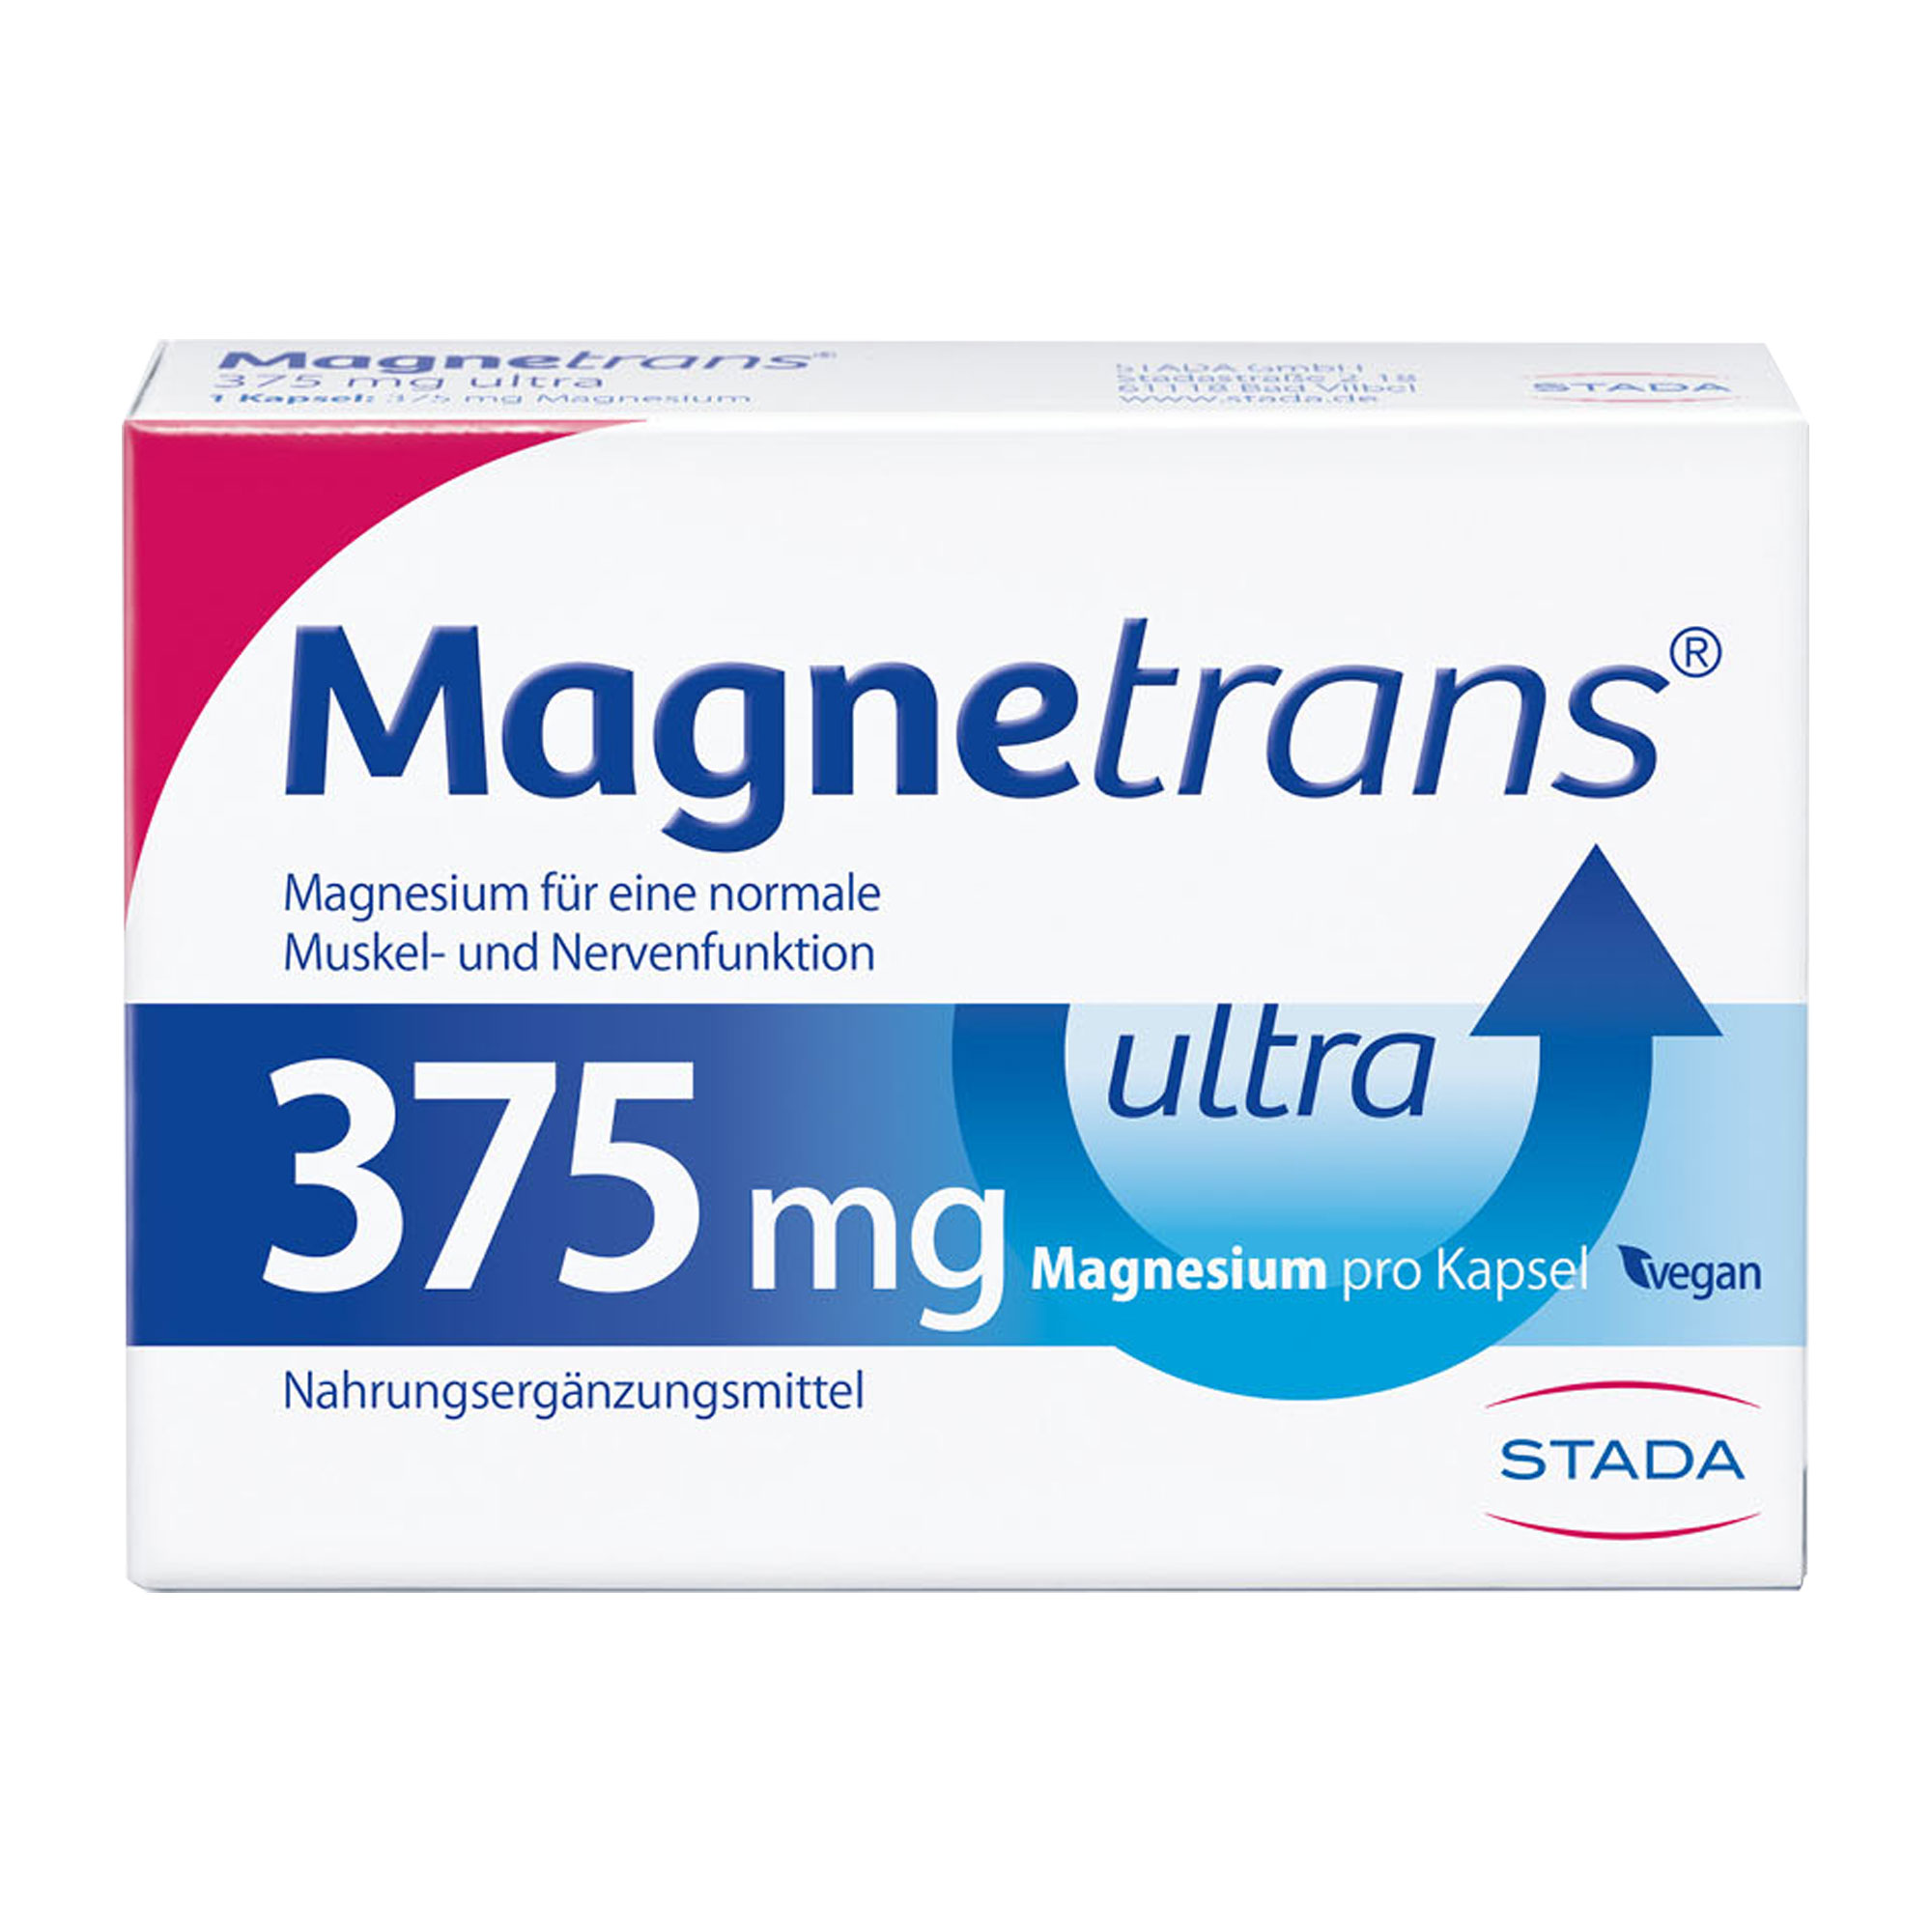 Nahrungsergänzungsmittel mit Magnesium zur ergänzenden Magnesiumversorgung.